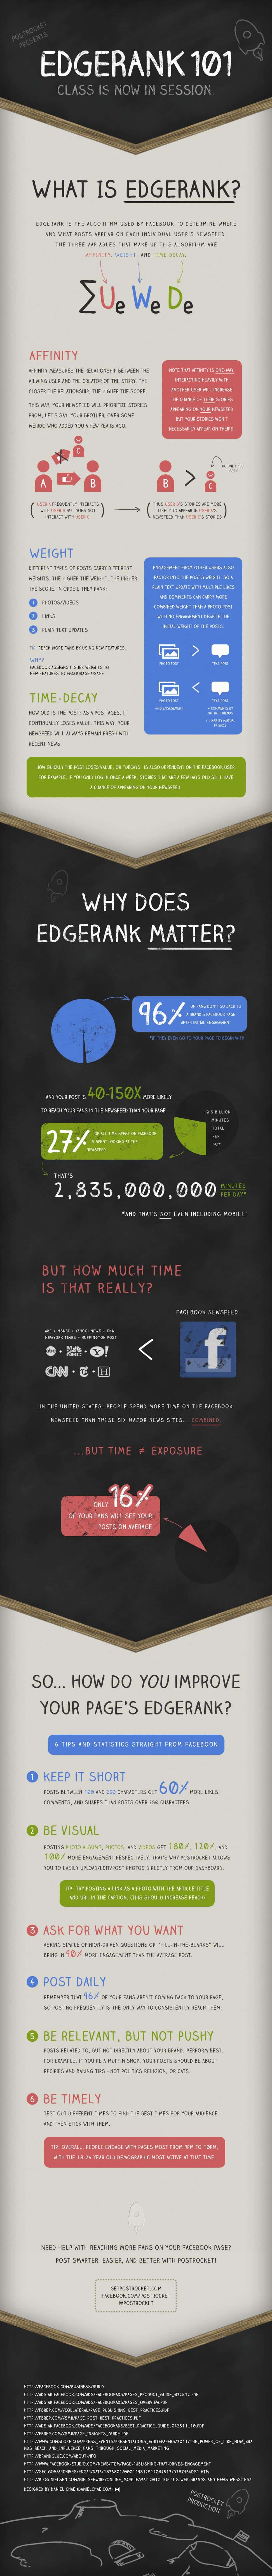 Infographie : Comment fonctionne l'EdgeRank de Facebook ?